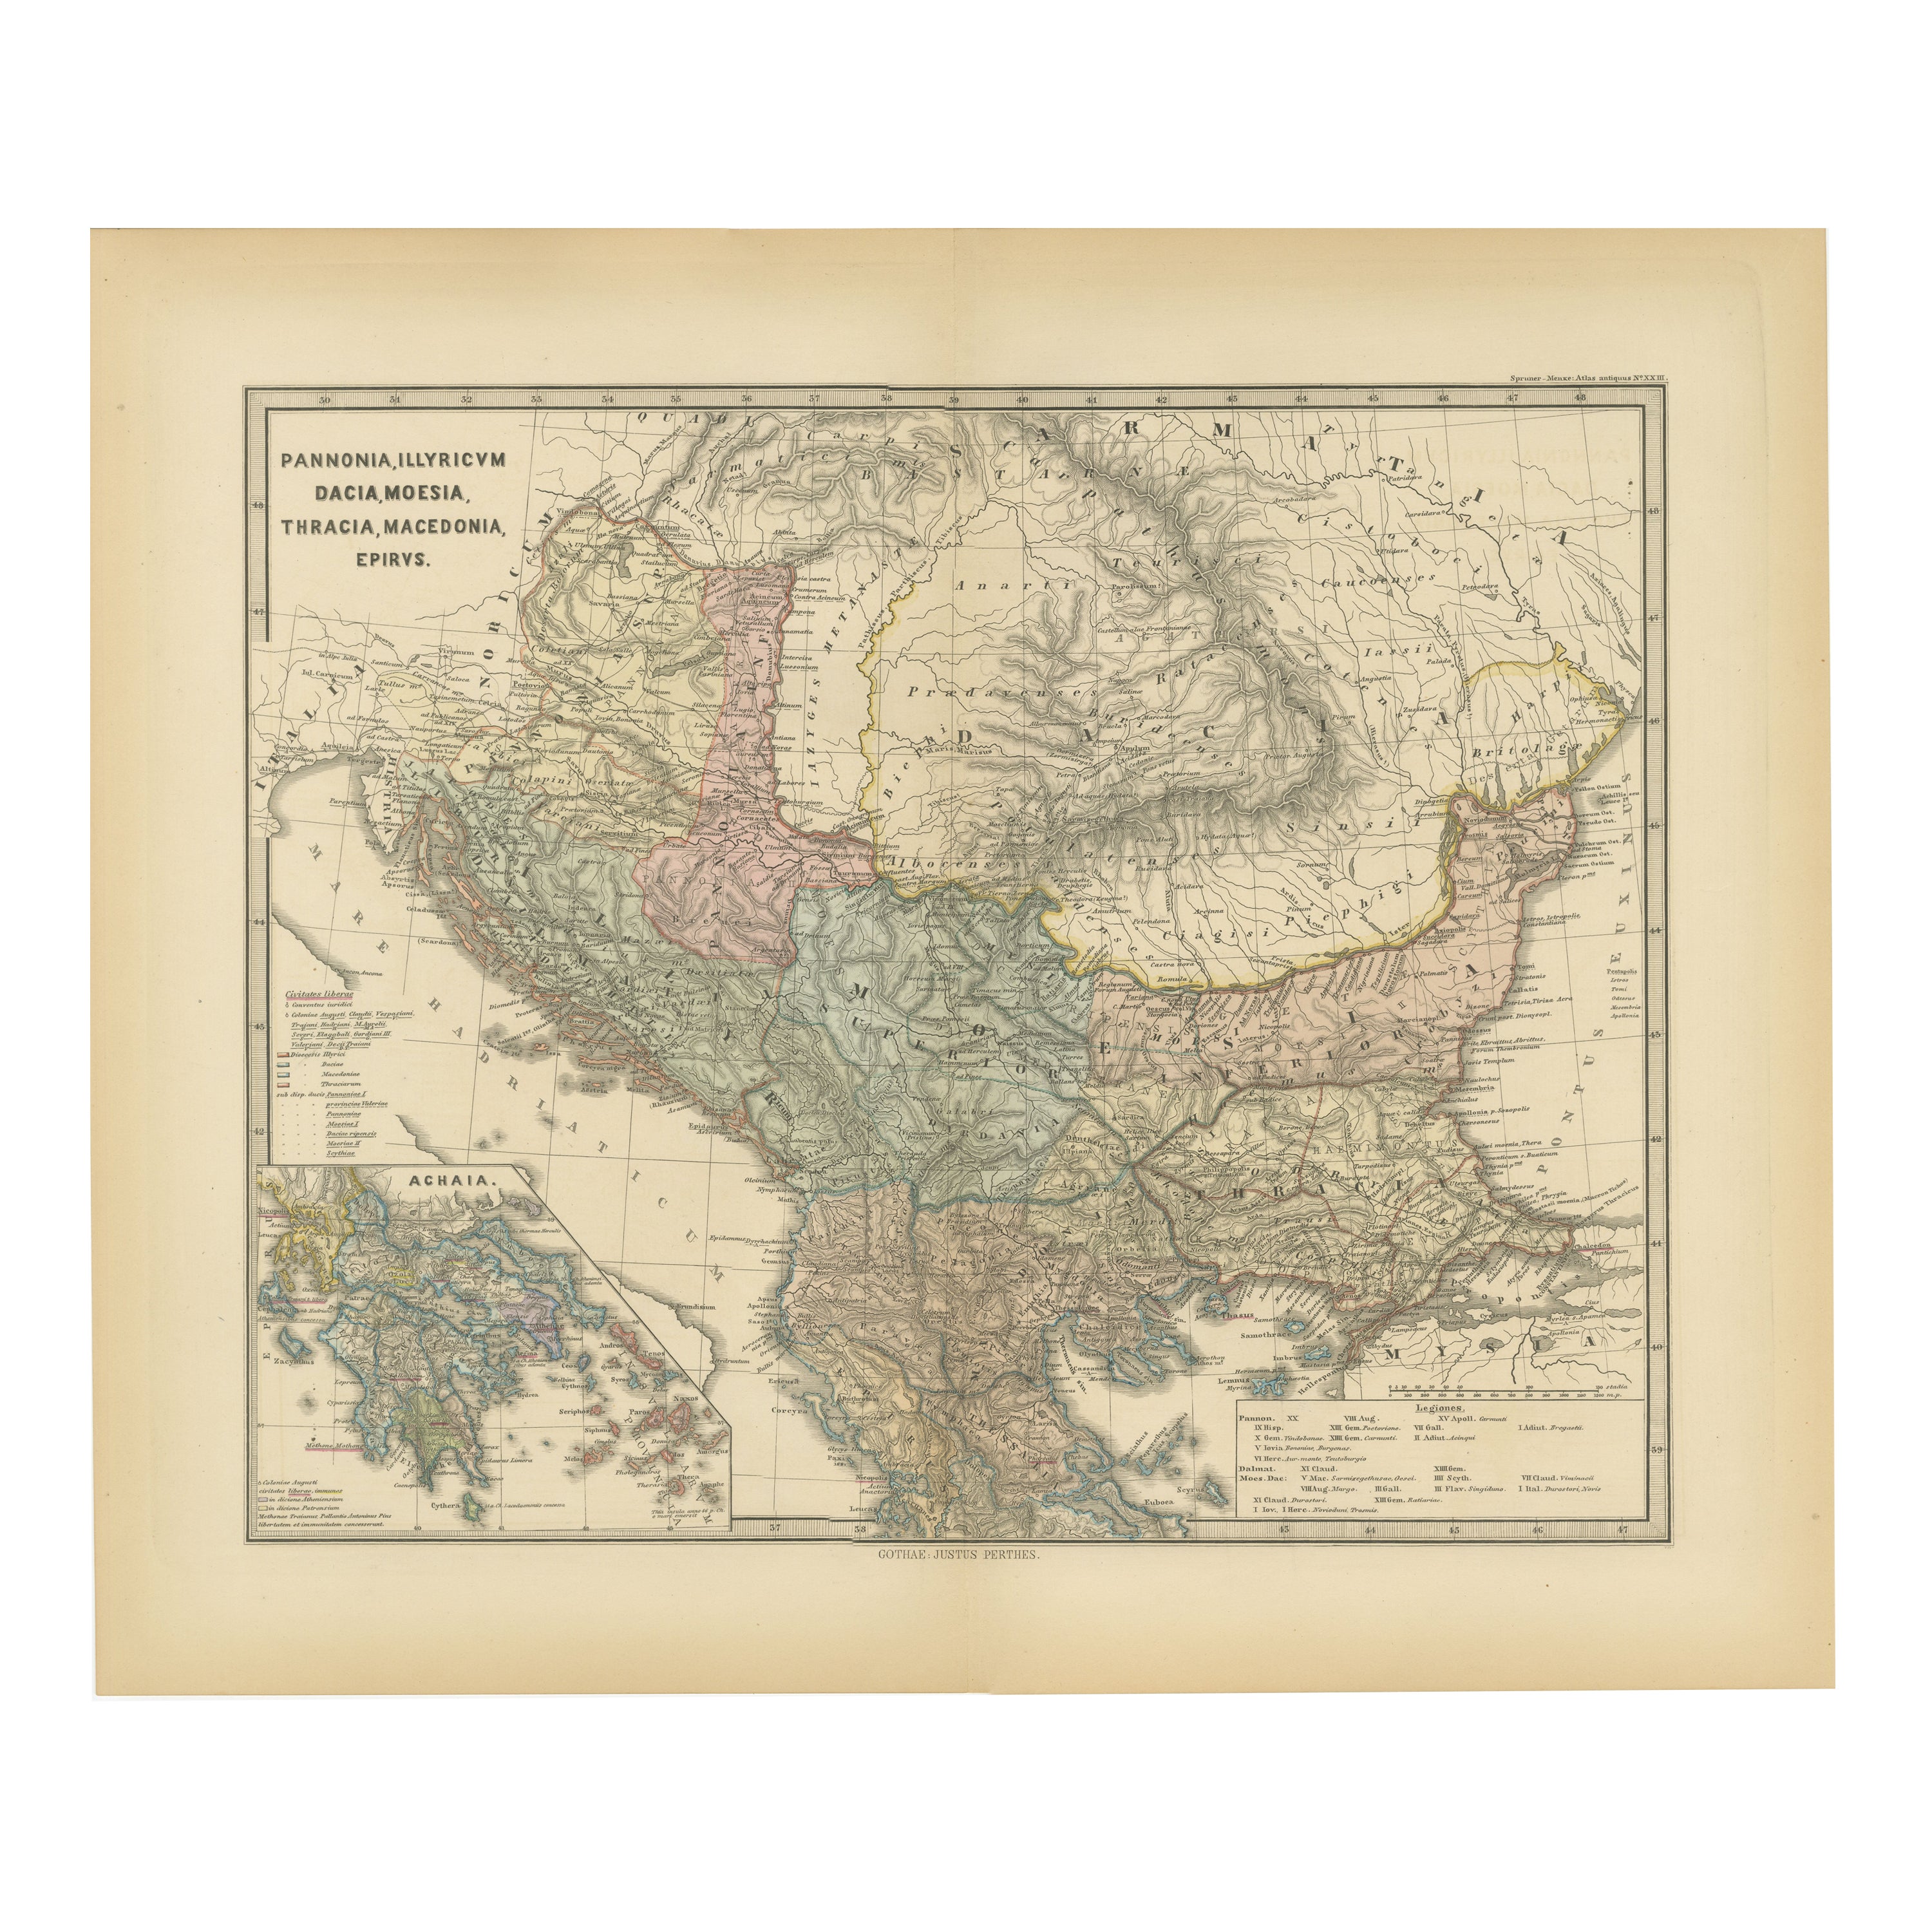 Römische Balkans: Pannonia, Illyricum, Dacia, Moesia, Thracia, Mazedonien und Thyris im Angebot